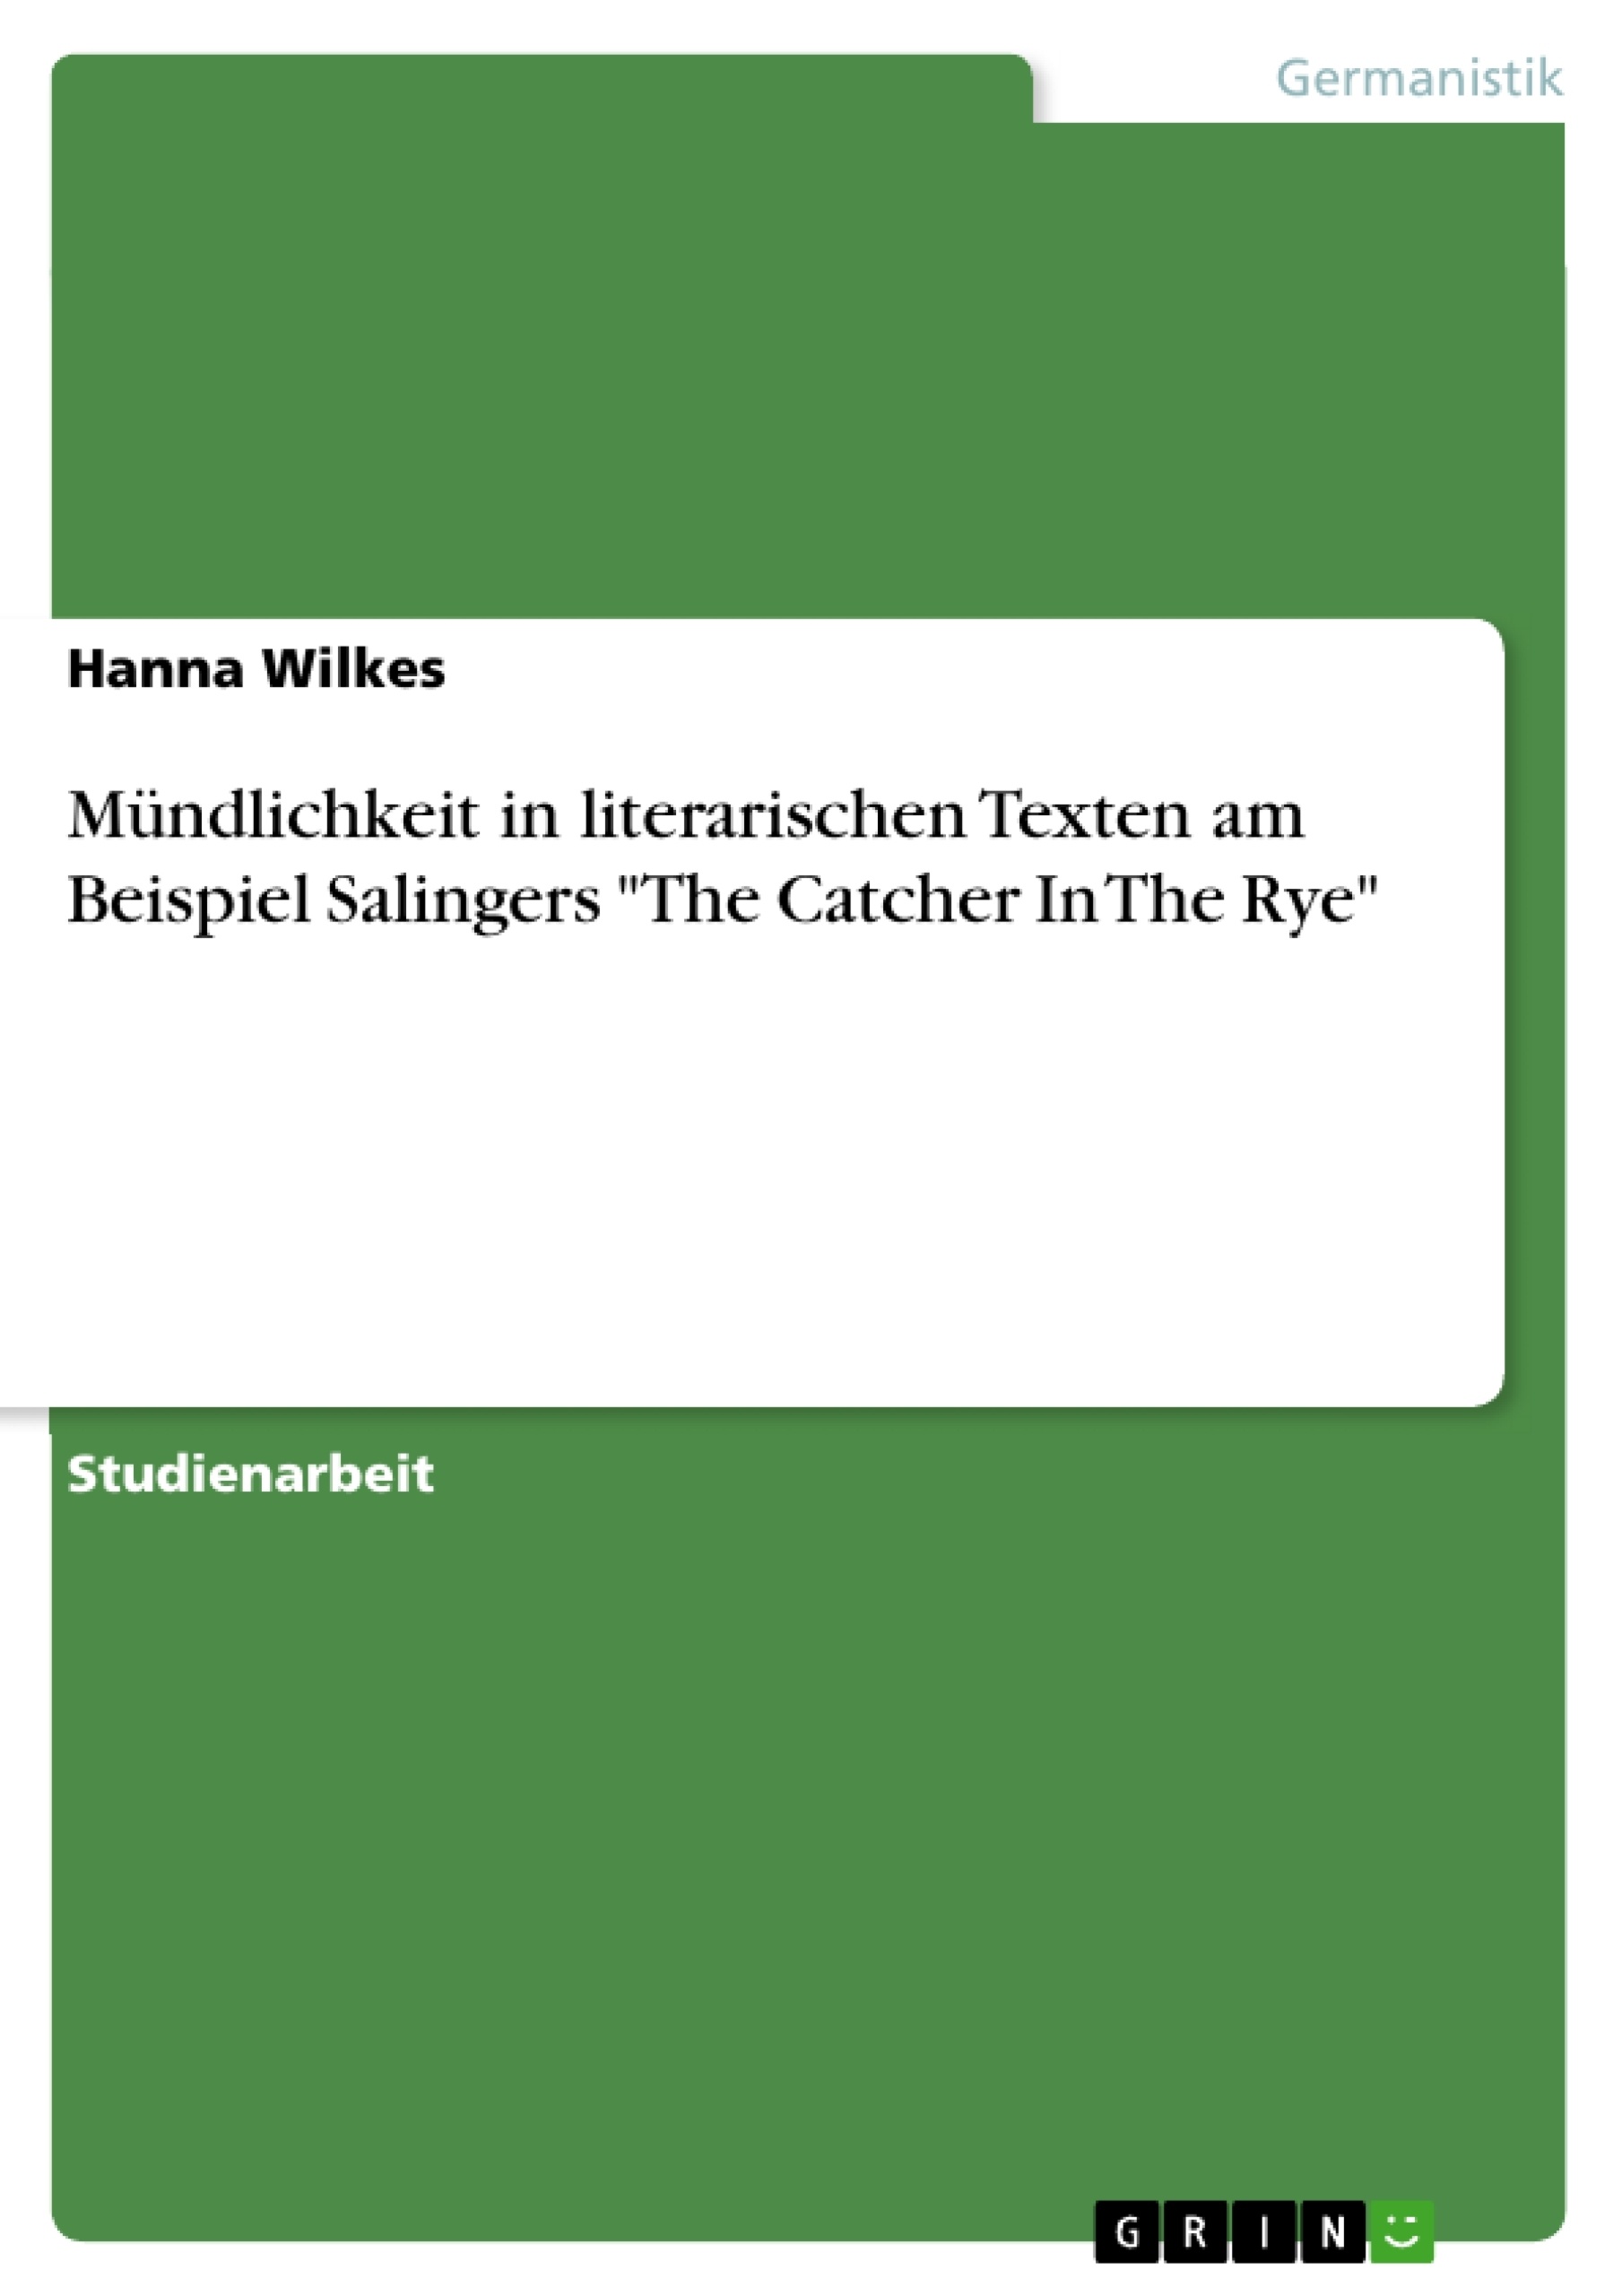 Titre: Mündlichkeit in literarischen Texten am Beispiel Salingers "The Catcher In The Rye"